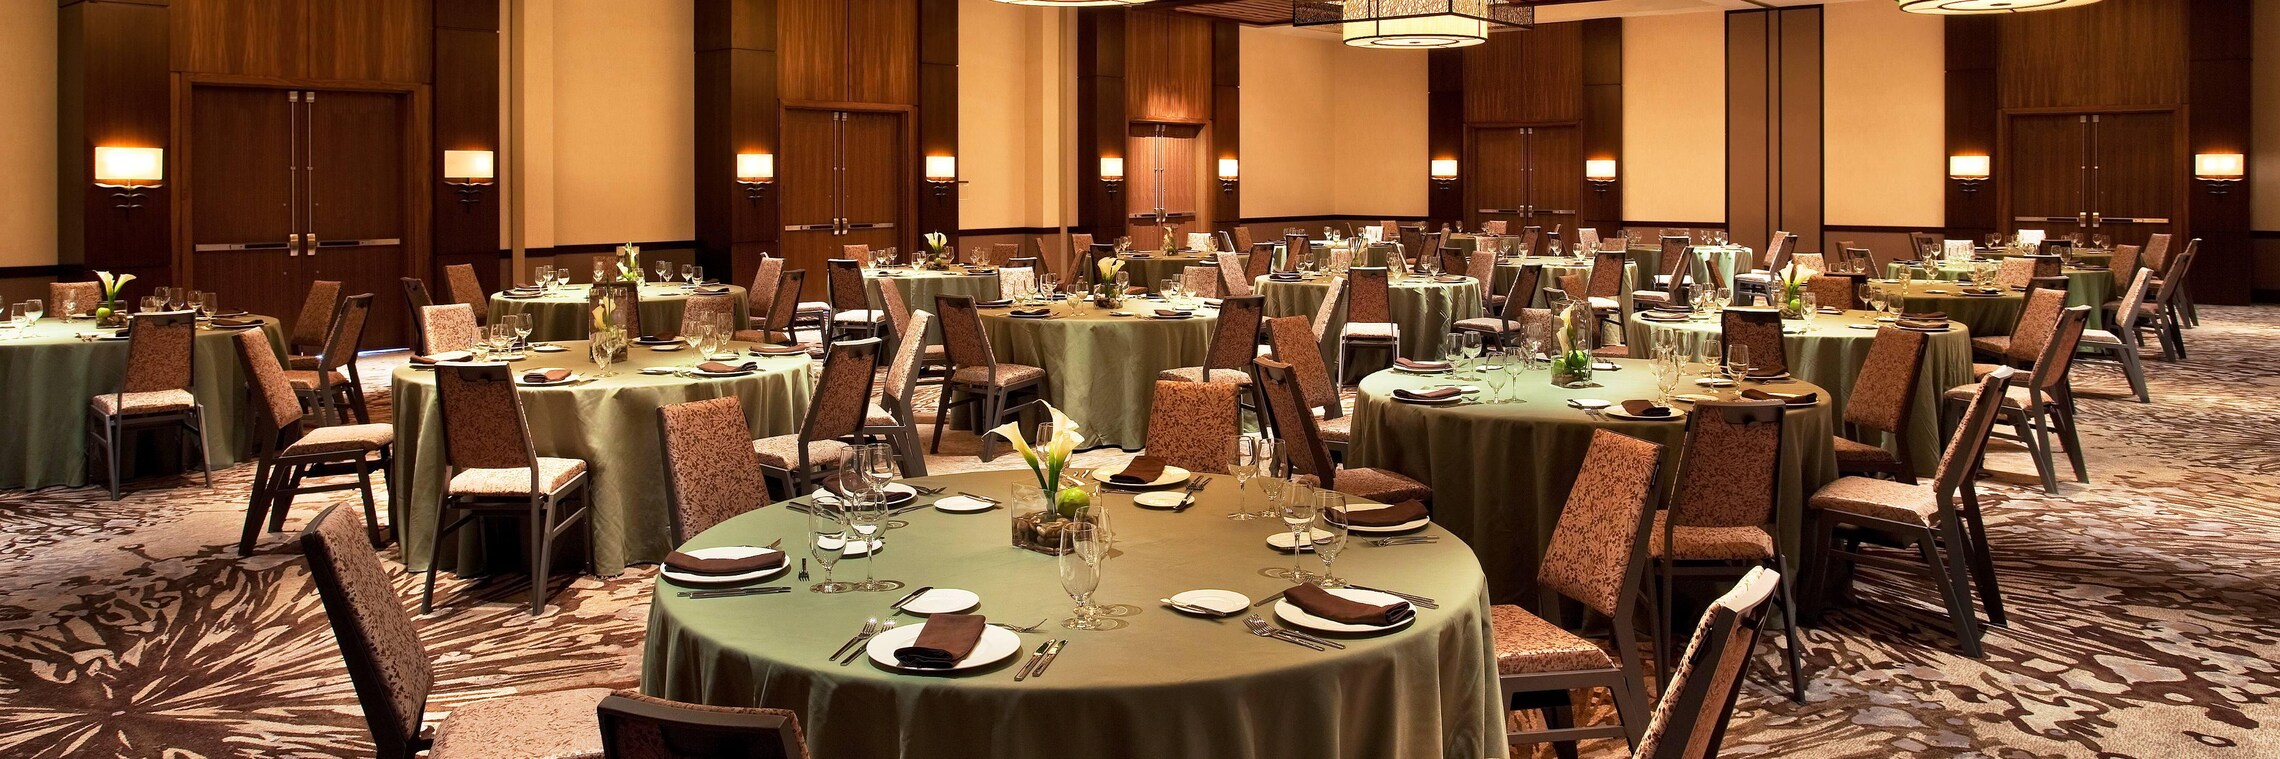 Westin Ballroom - Banquet Setup